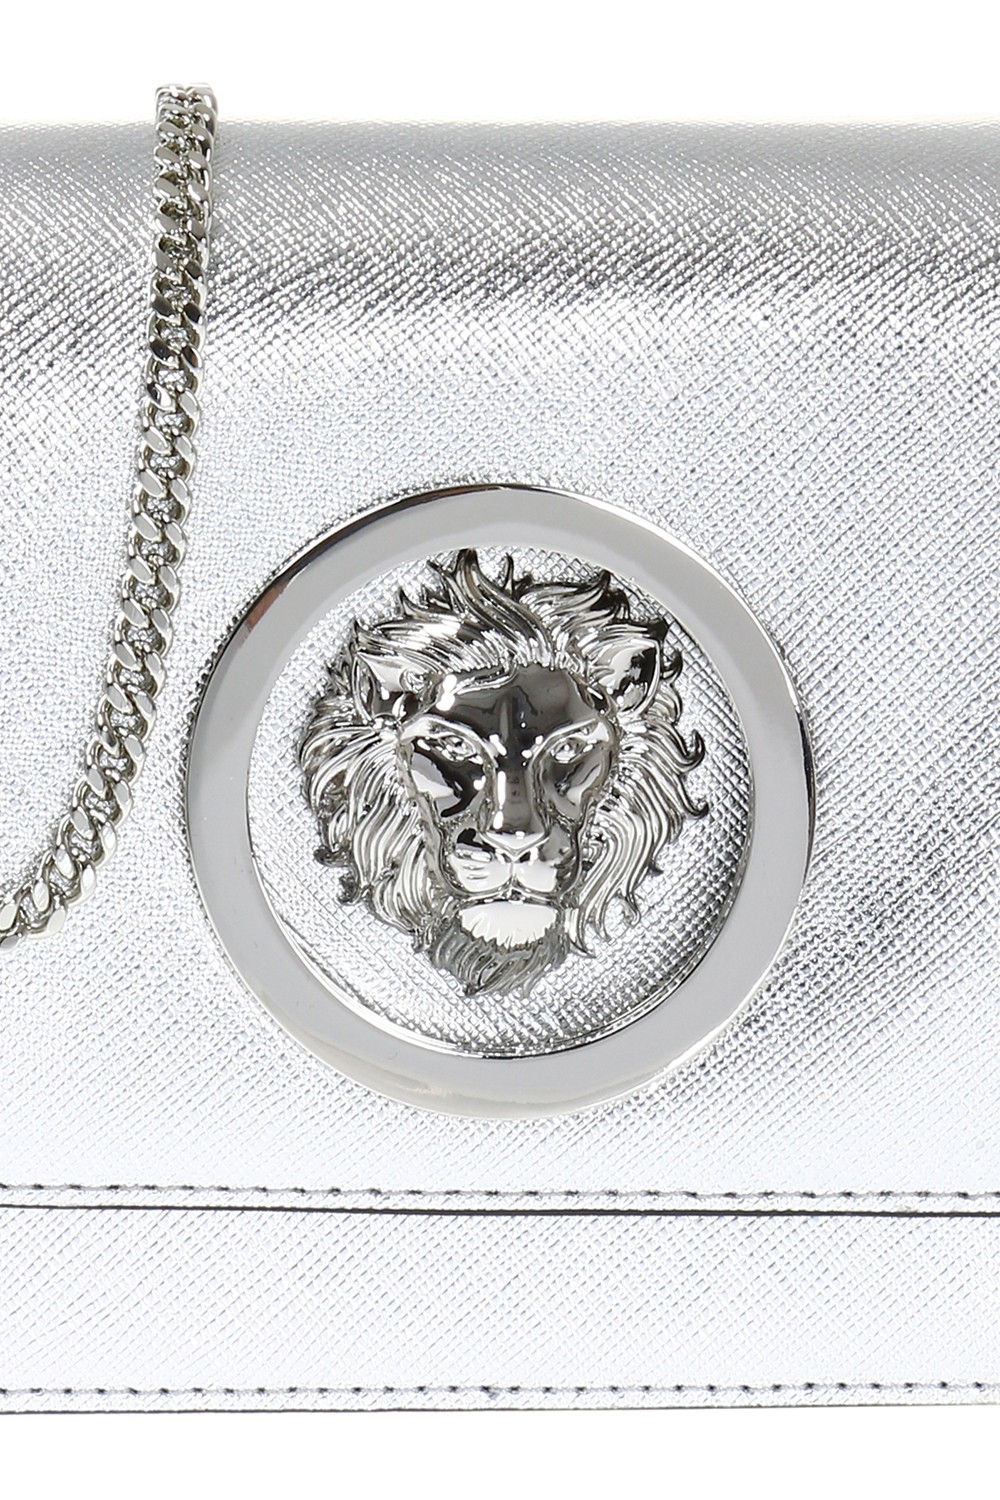 Versus Versace Lion Head Fringe Shoulder Bag